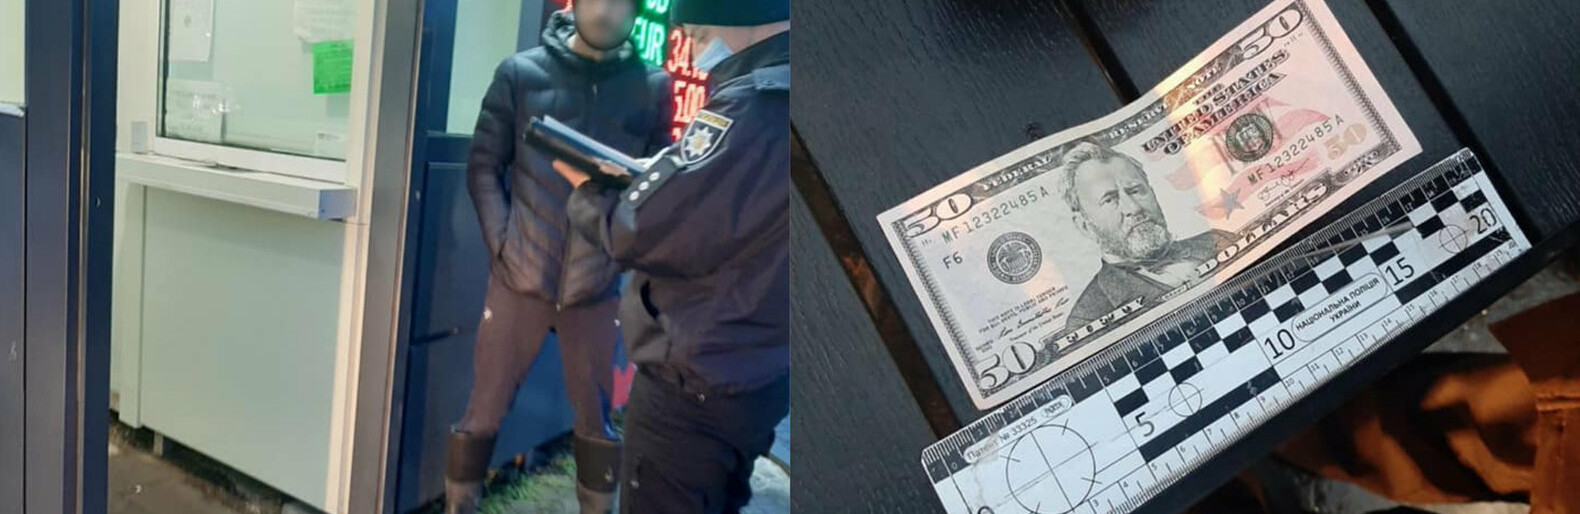 У Мукачеві затримали чоловіка, який намагався обміняти фальшиву доларову купюру (ФОТО)